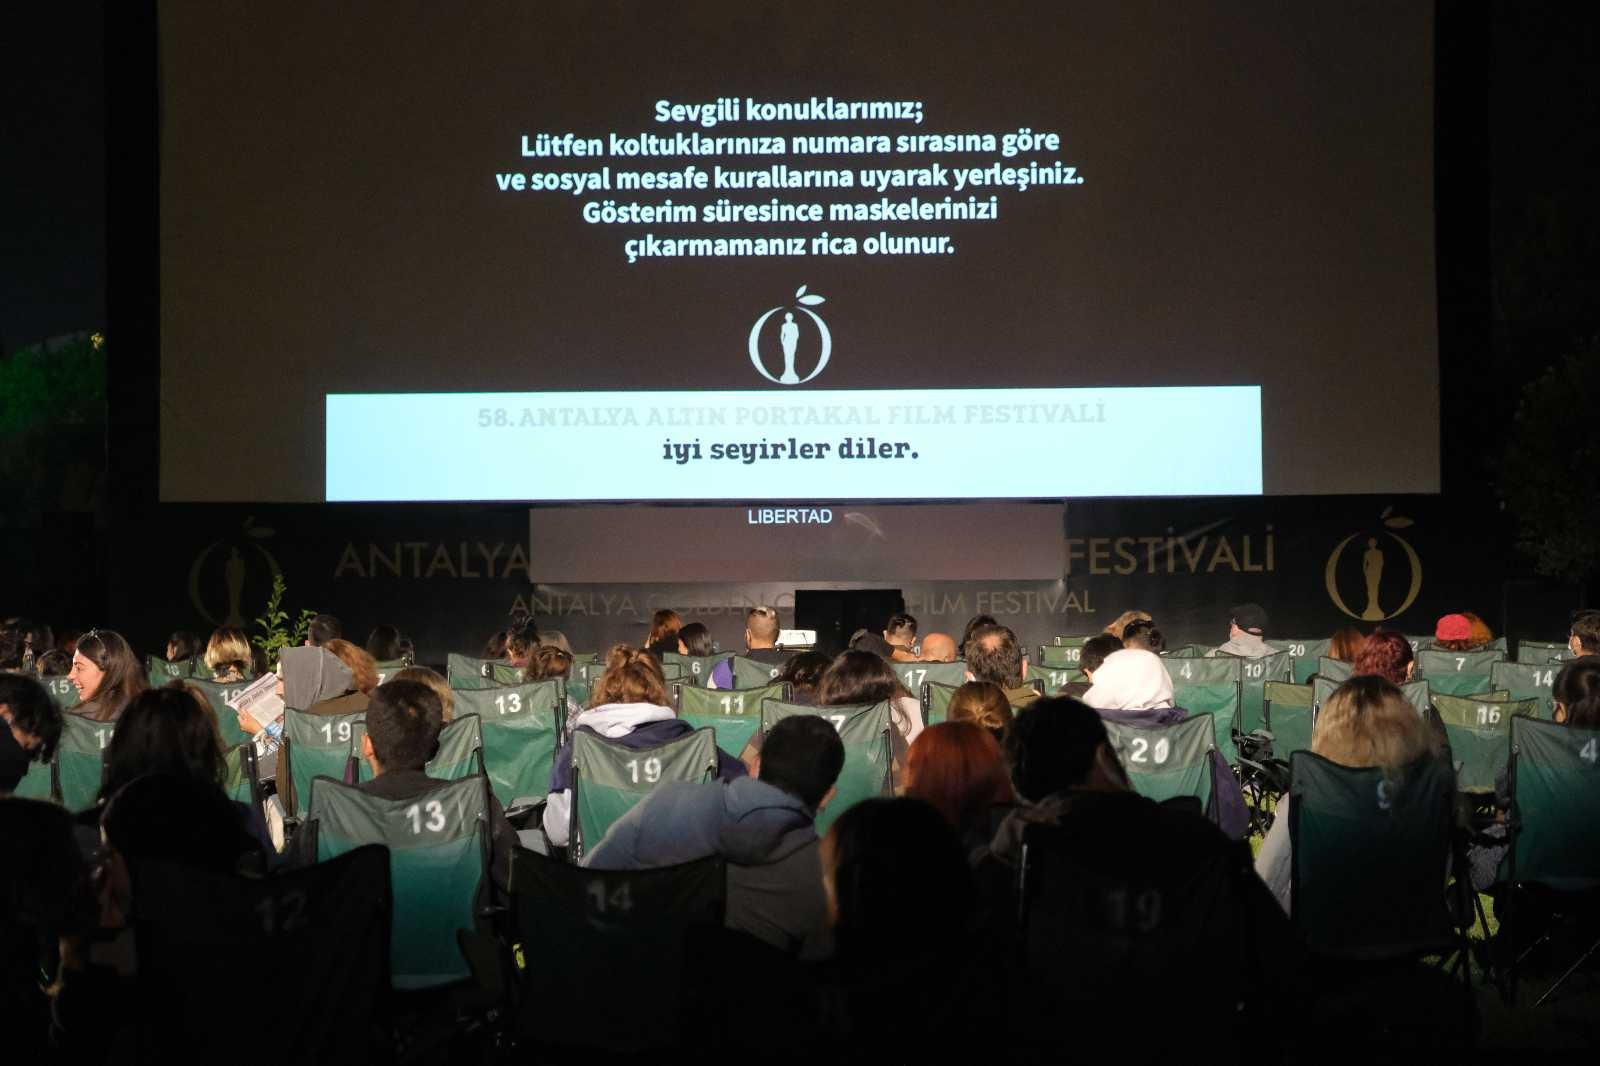 Altın Portakal Film Festivali, film gösterimi ve söyleşiler ile devam ediyor #antalya